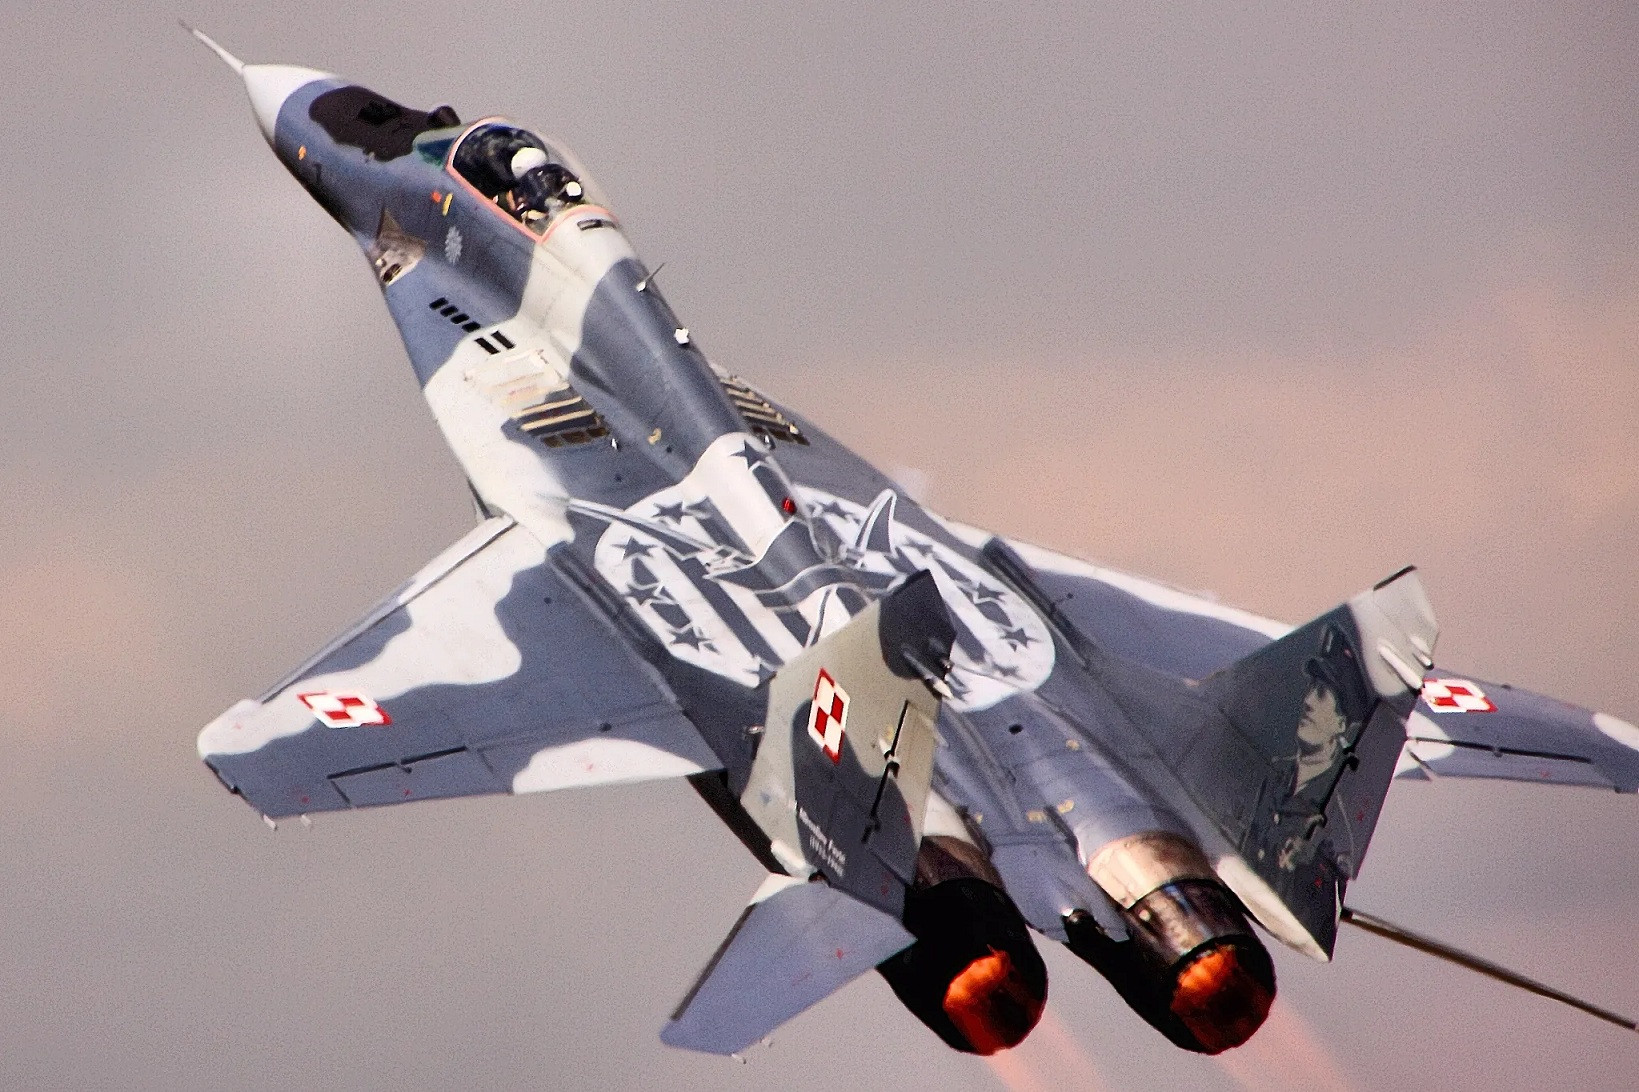 Quốc gia thành viên NATO bị nghi bí mật chuyển tiêm kích MiG-29 cho Ukraine